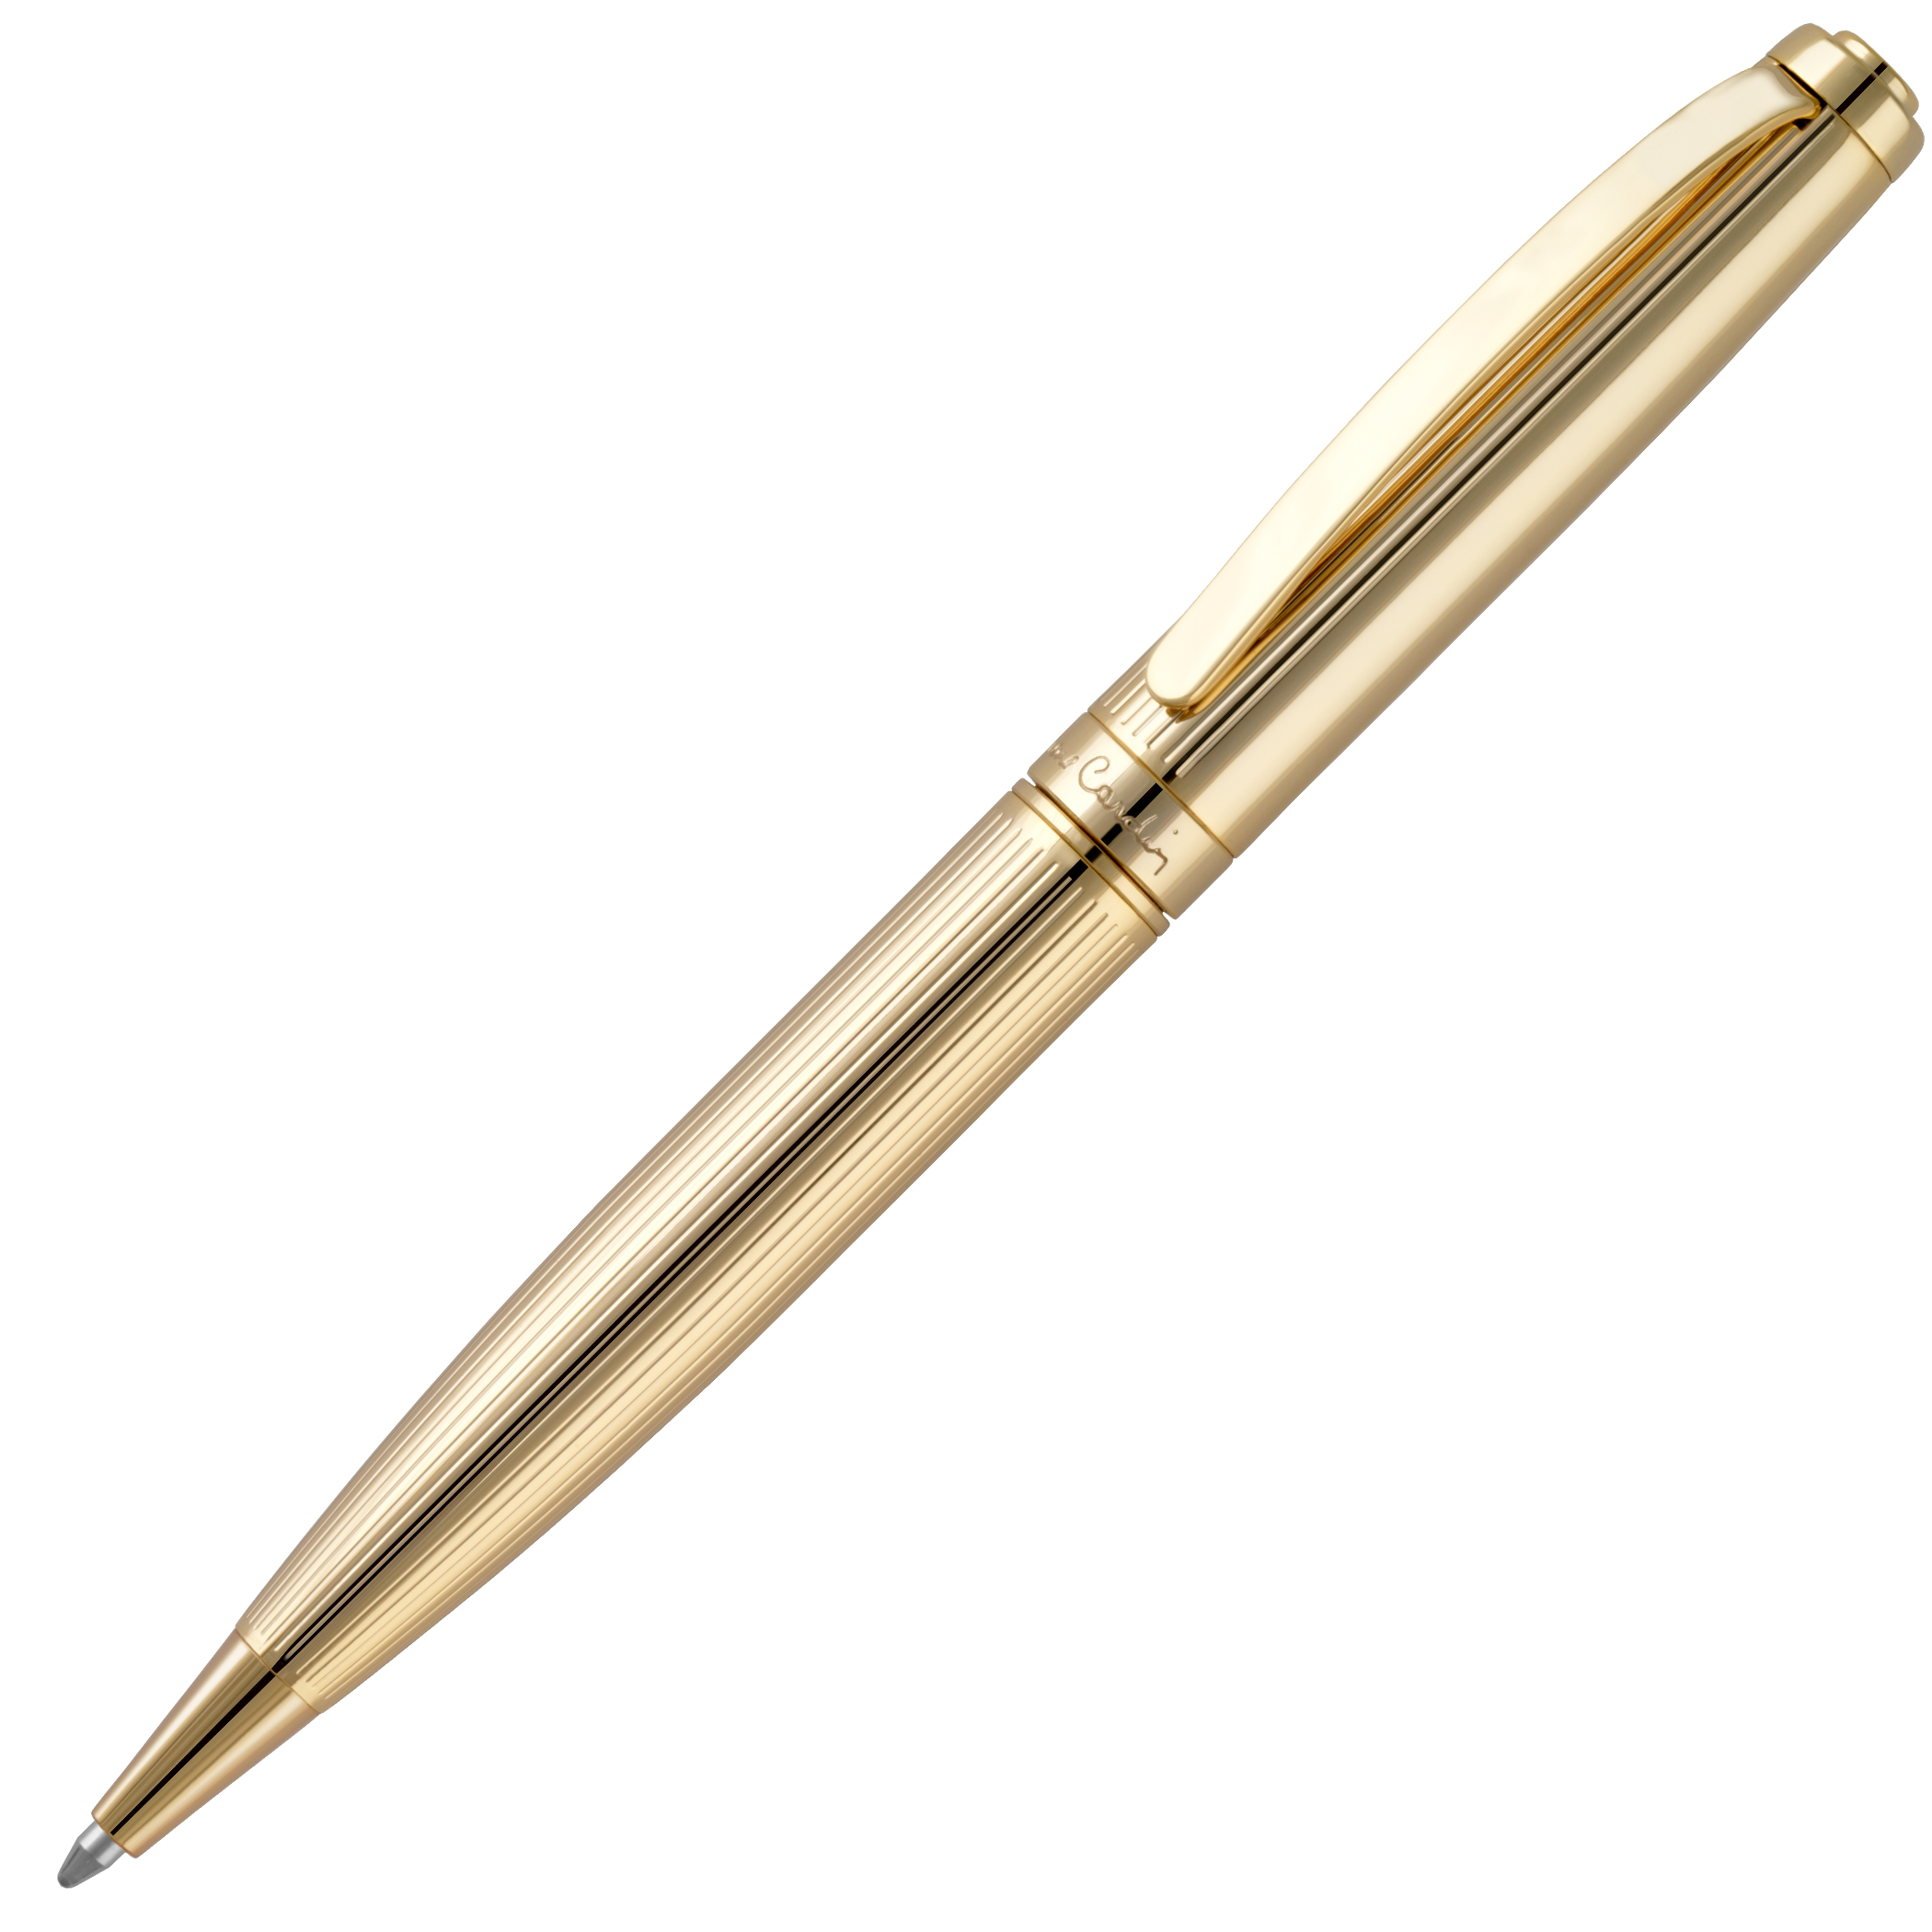 Pierre Cardin Cristal Series Pen Rich Set Golden Body Gold Trim GT Steel Body 